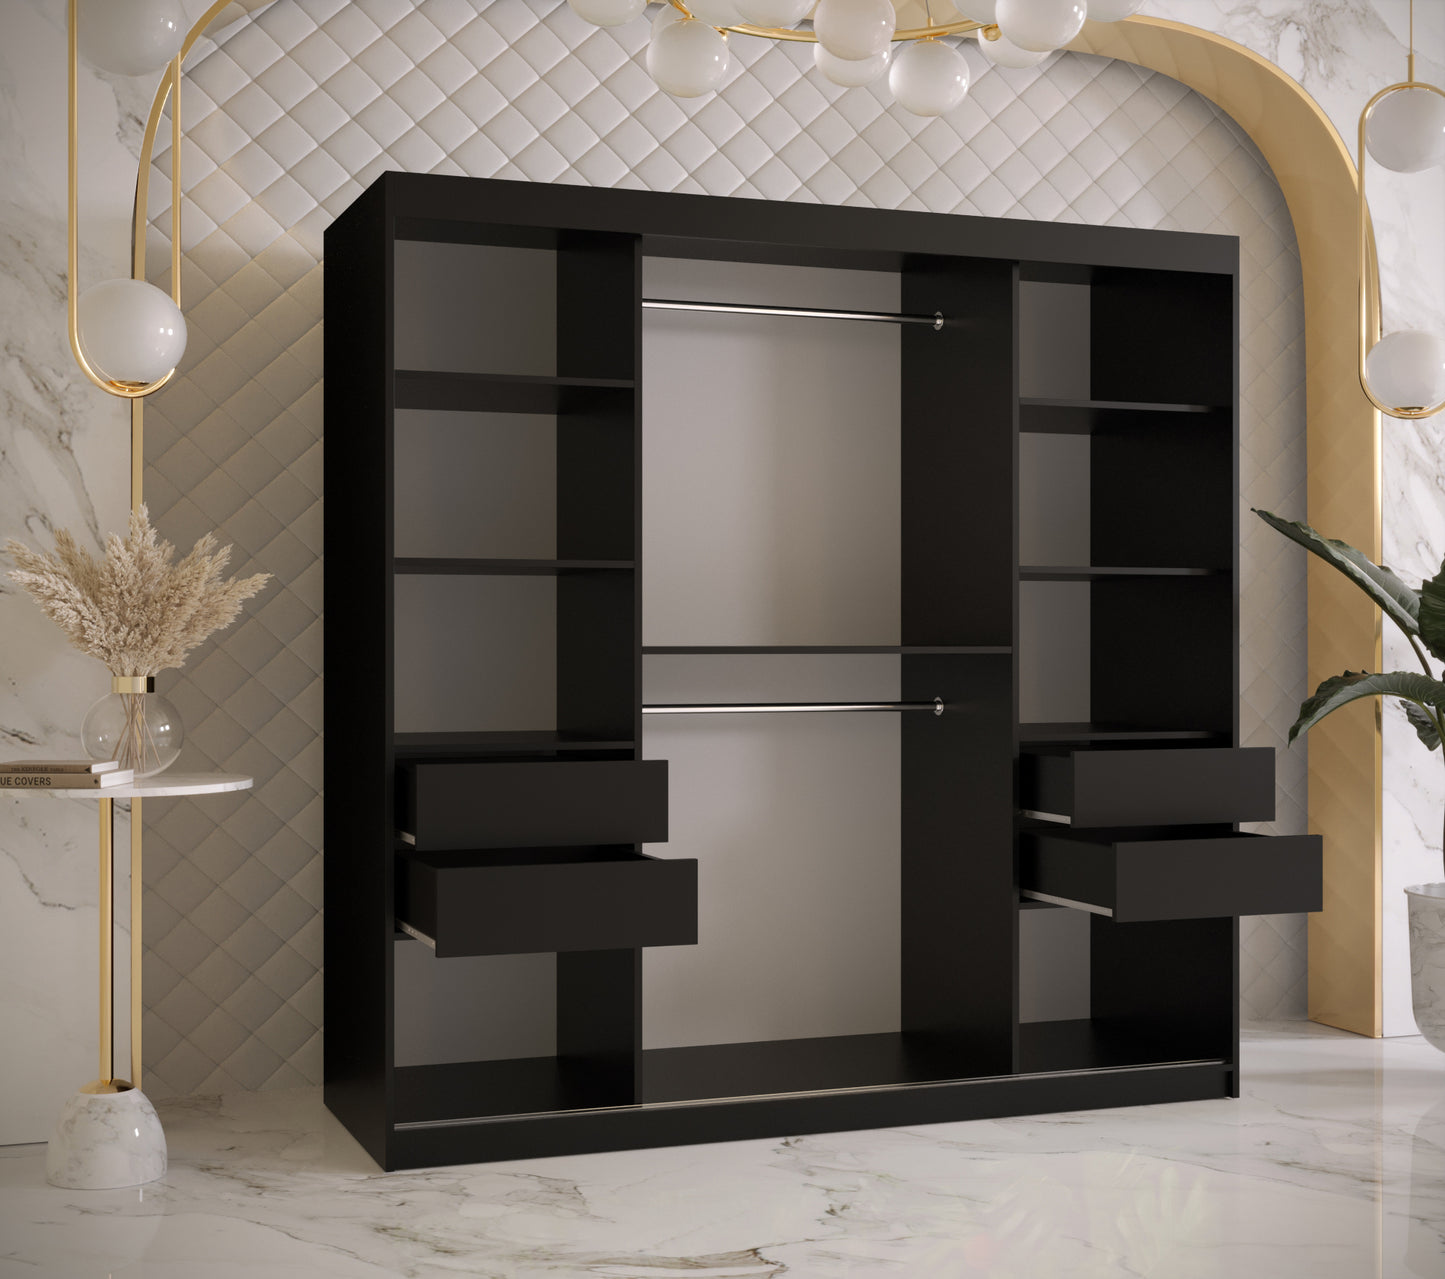 RAMIRA 1 - Wardrobe Sliding Door in Black or White Combinations, Shelves, Rails, Drawer optional >180cm<